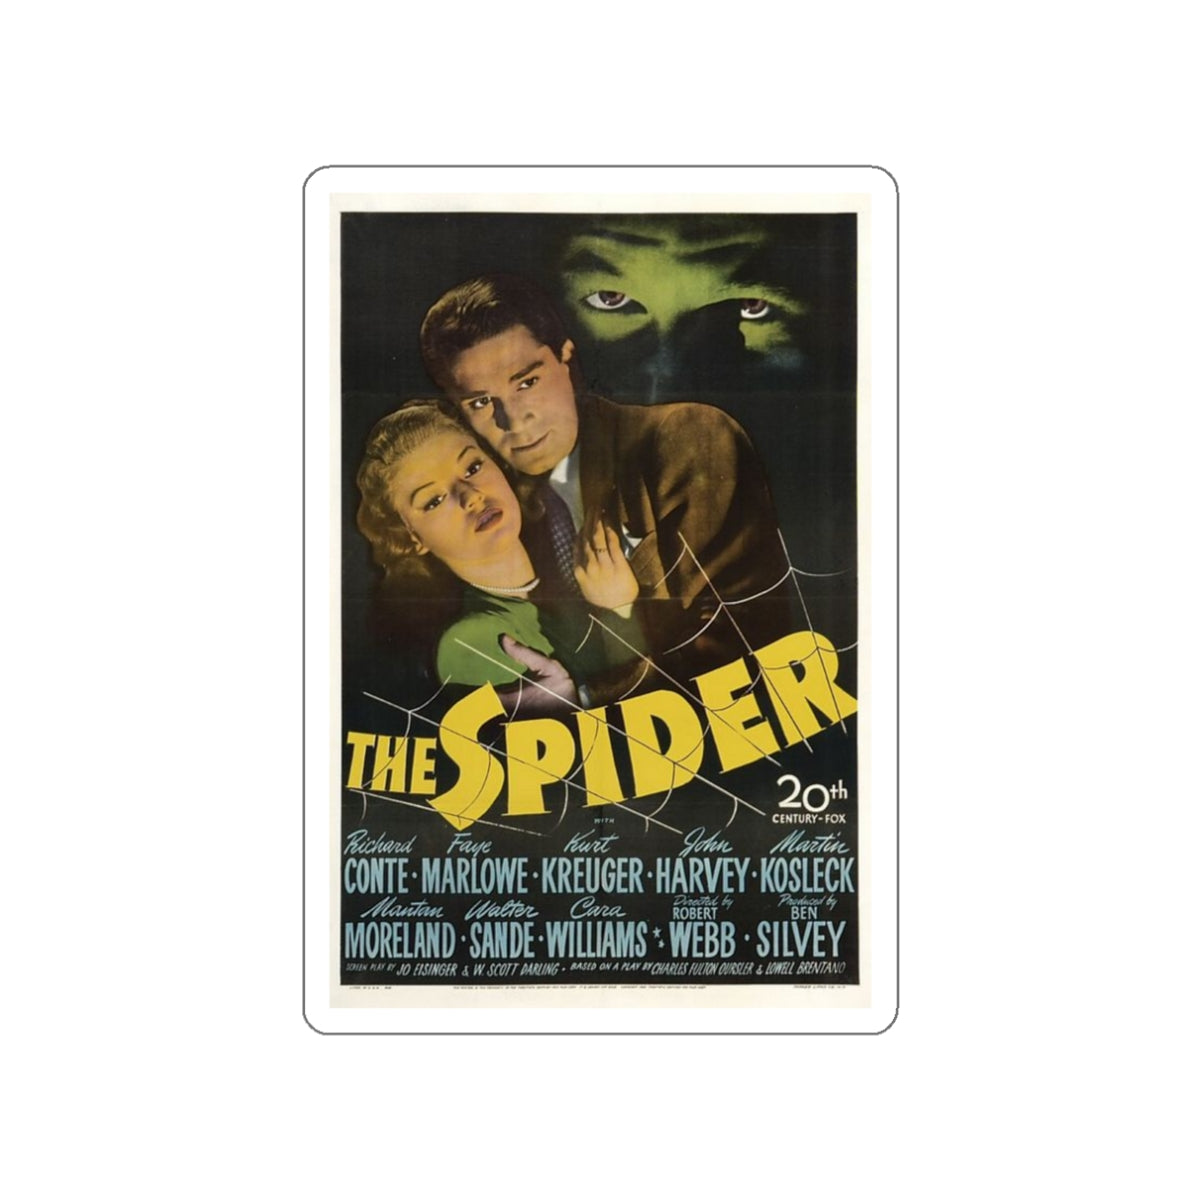 THE SPIDER 1958 Movie Poster STICKER Vinyl Die-Cut Decal-White-The Sticker Space